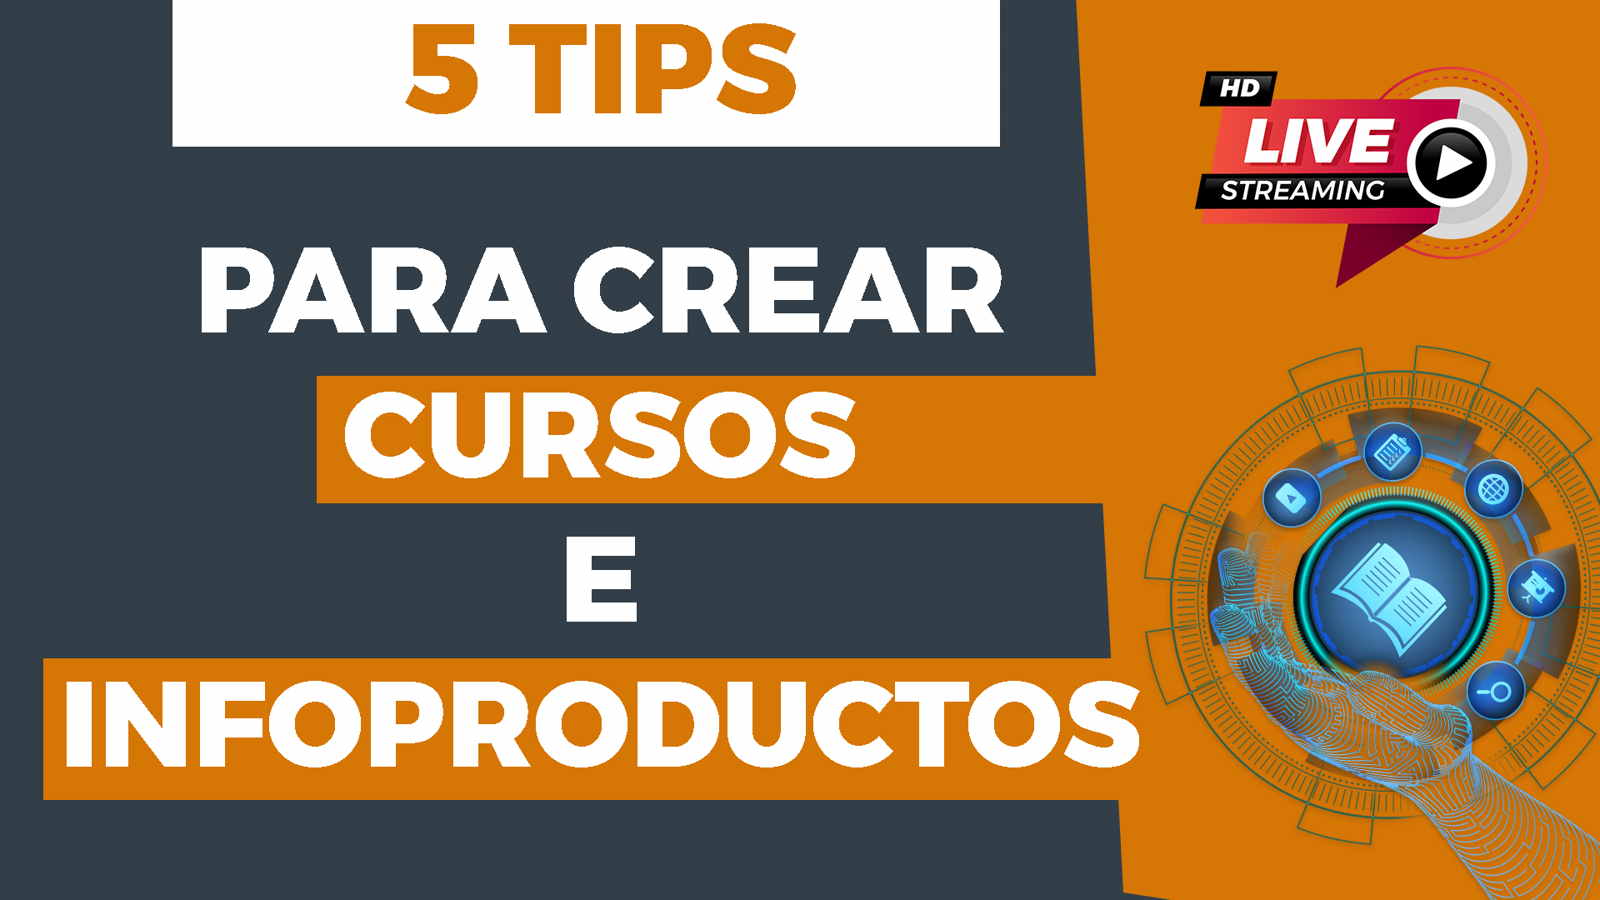 5 Tips para Crear Cursos e Infoproductos